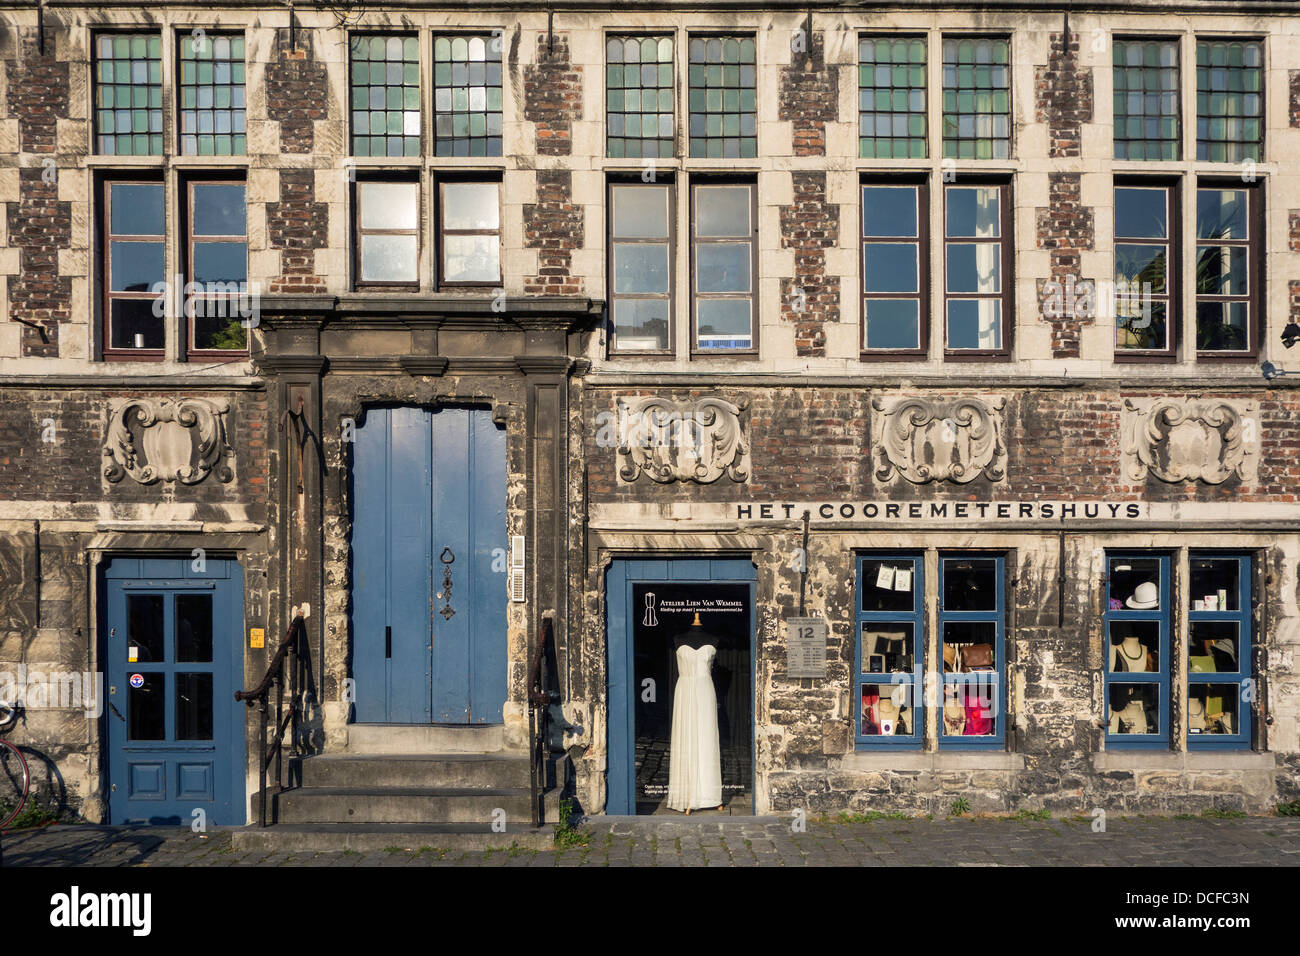 Die Guildhall Mais Vermesser Haus / Cooremetershuys im Grass Lane / Graslei in Gent, Ost-Flandern, Belgien Stockfoto